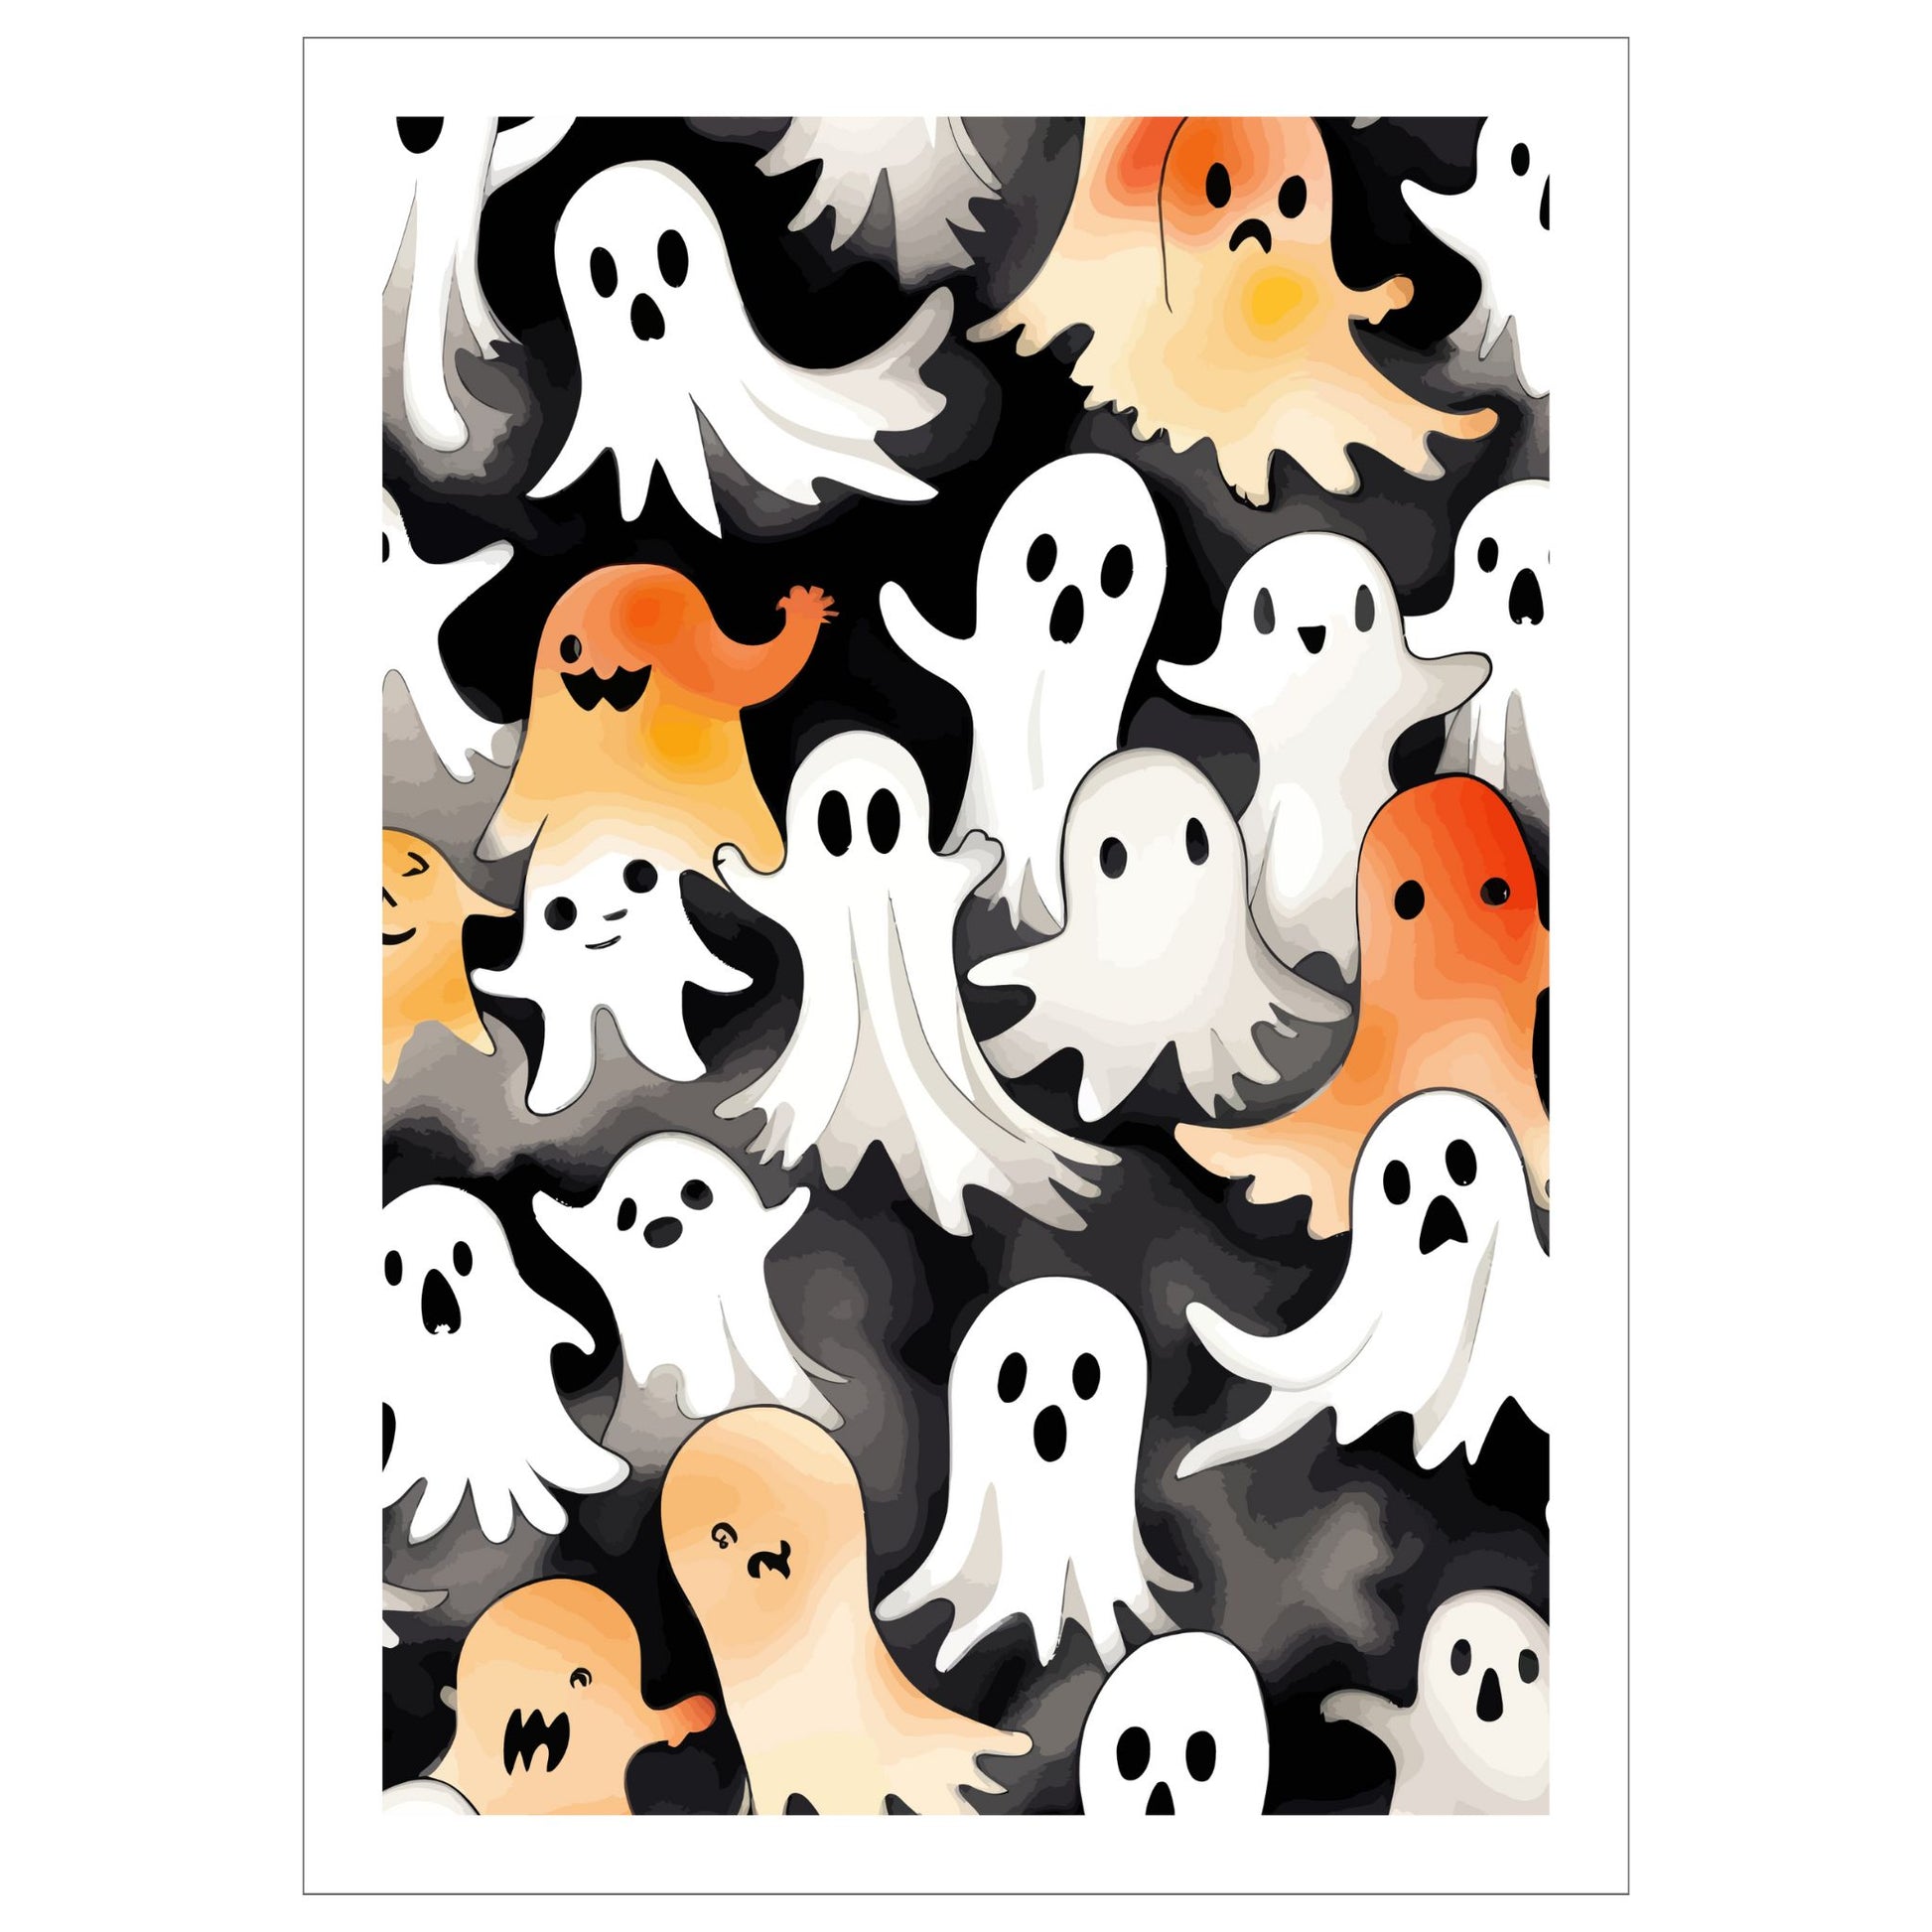 Creepy og kult halloweenplakat. Motiv er i cartoon og forestiller spøkelser